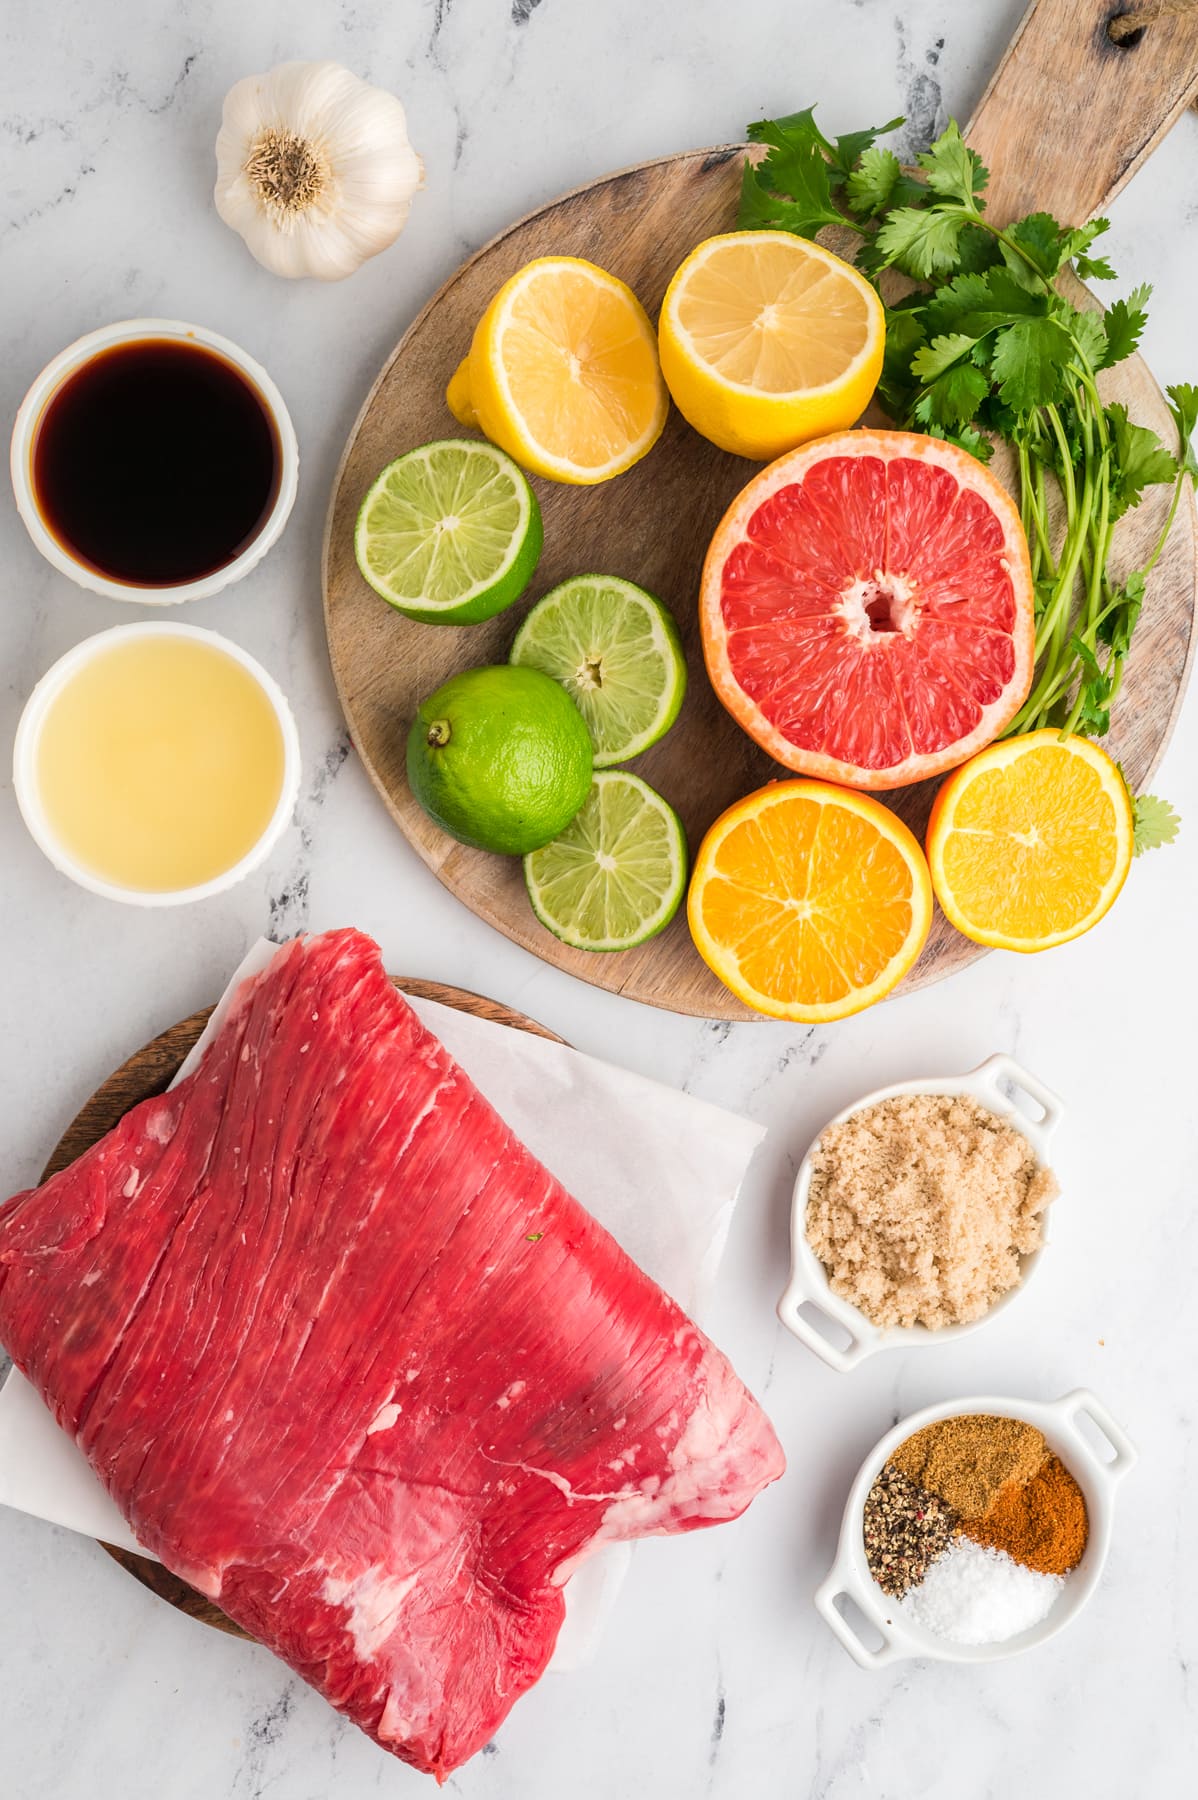 Overhead view of carne asada ingredients